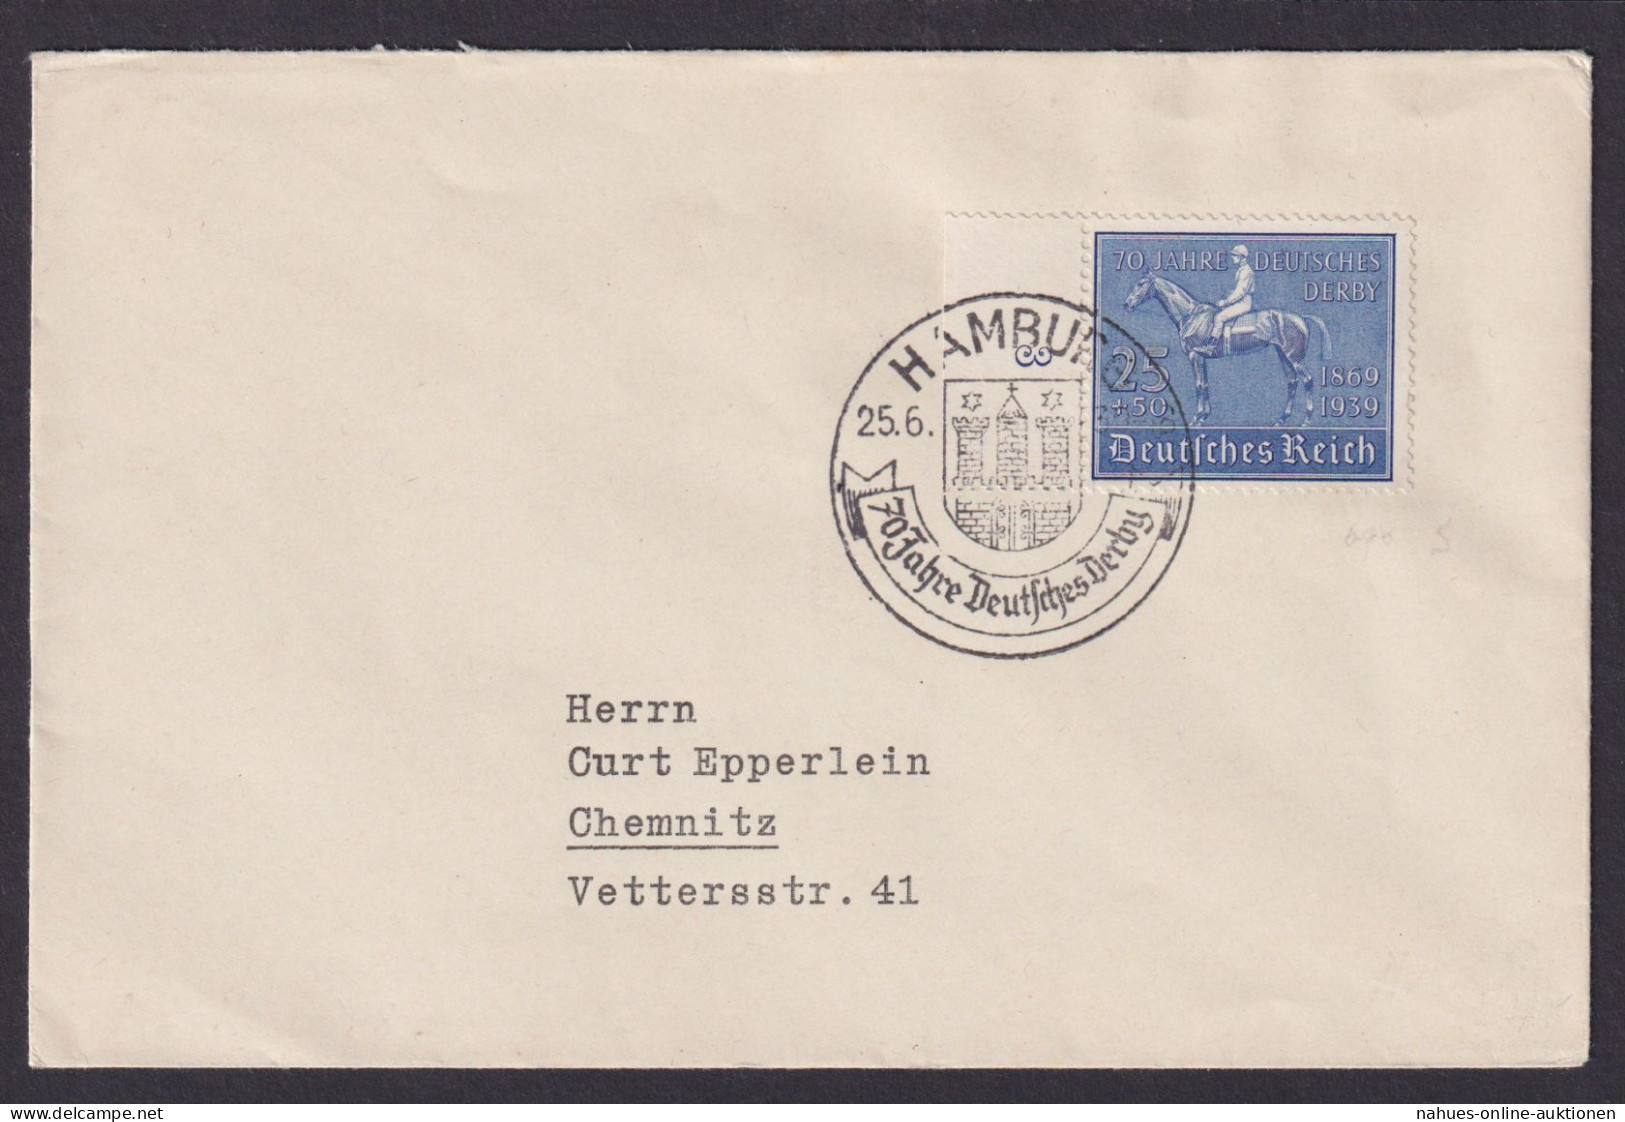 Hamburg Deutsches Reich Brief Chemnitz Sachsen SST 70 Jahre Deutsches Derby - Covers & Documents